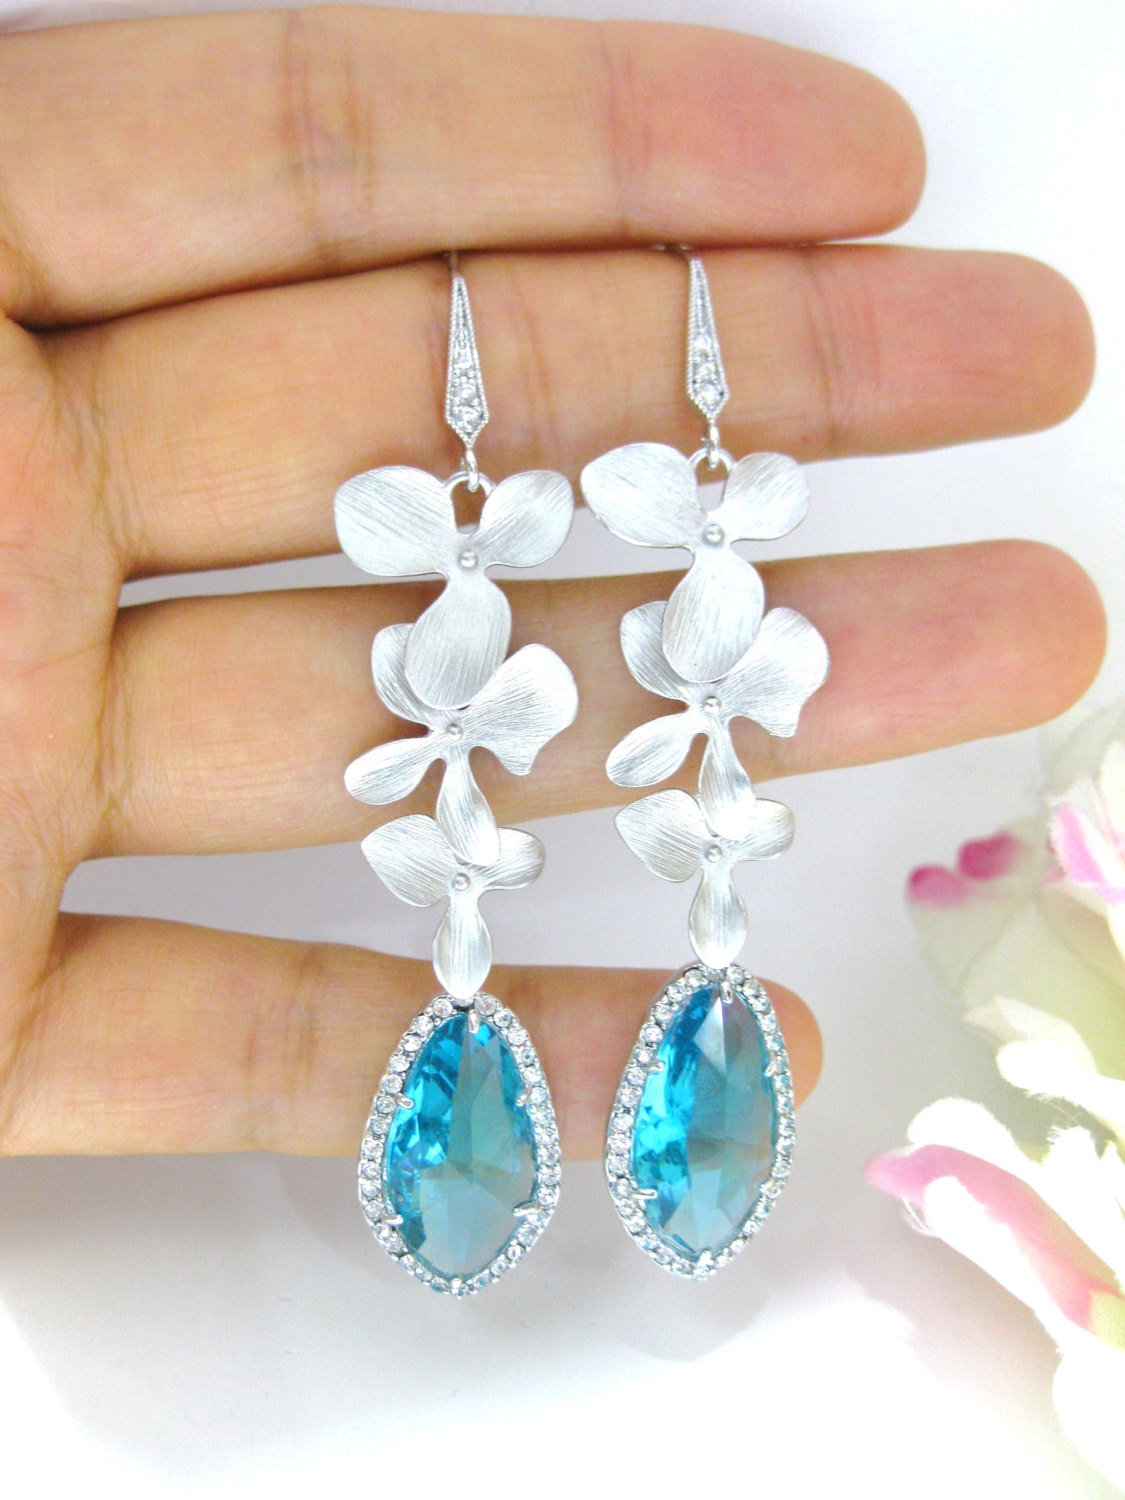 Light Blue Crystal Earrings, Teal Blue Chandelier Earrings, Bridal Long Dangle Earrings, Wedding Jewelry Silver Flower Earrings (e161)